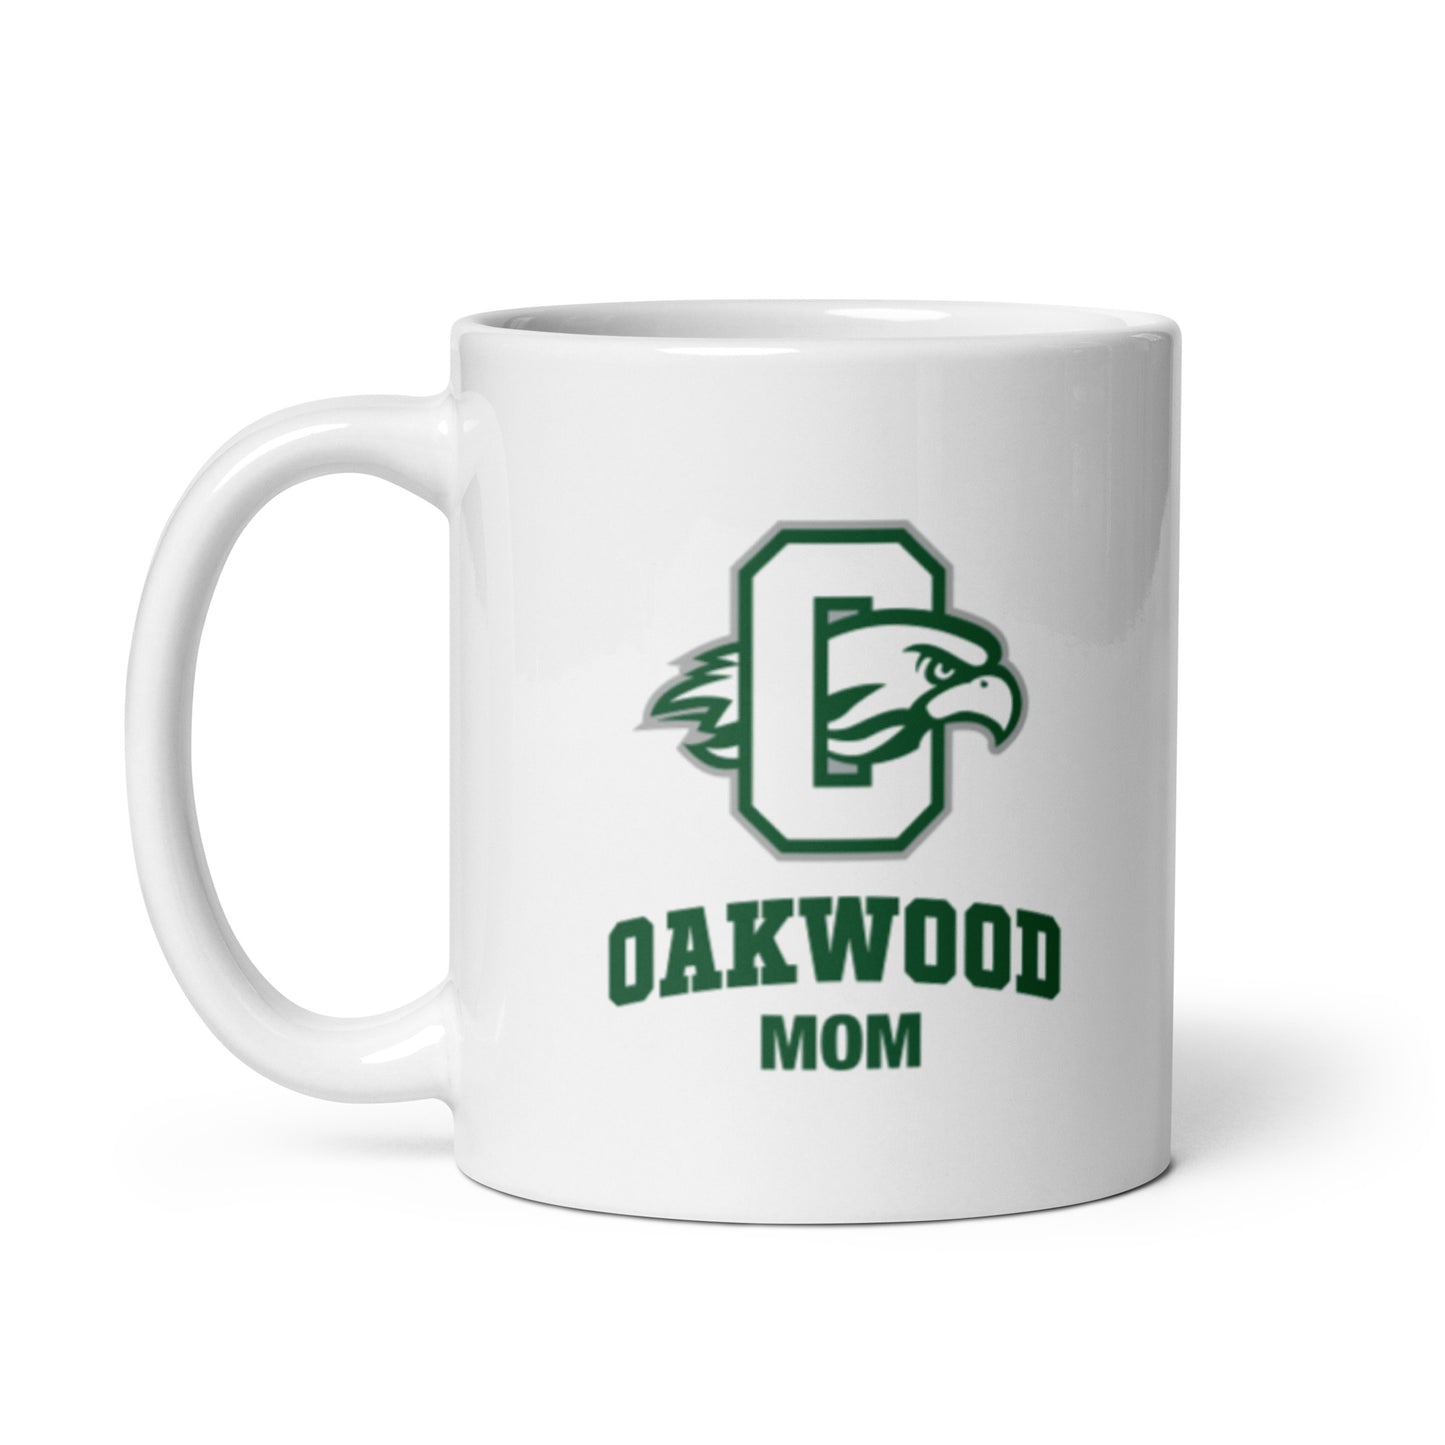 Oakwood Mom Mug